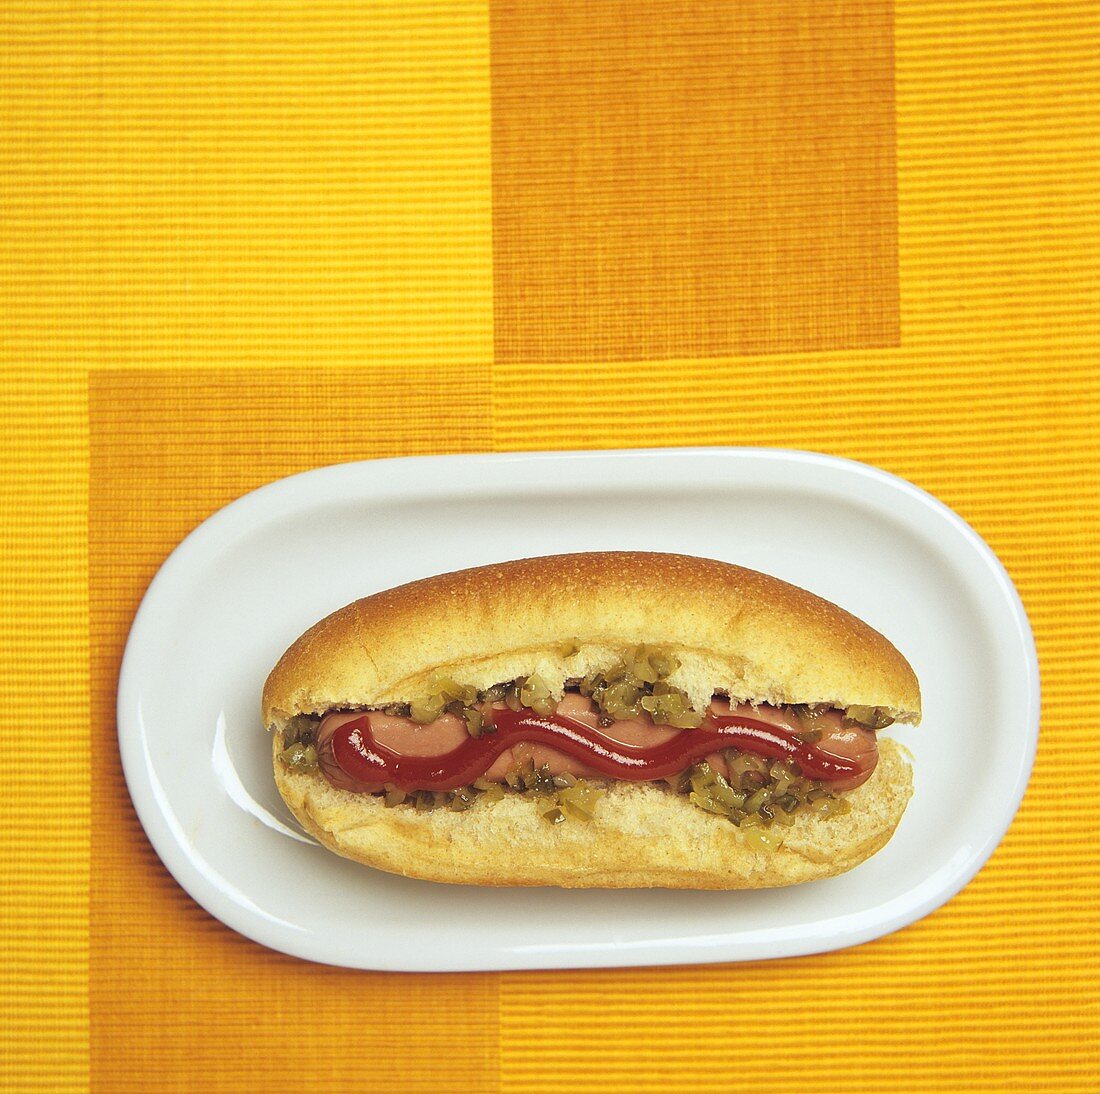 Hot Dog mit Relish und Ketchup (Draufsicht)